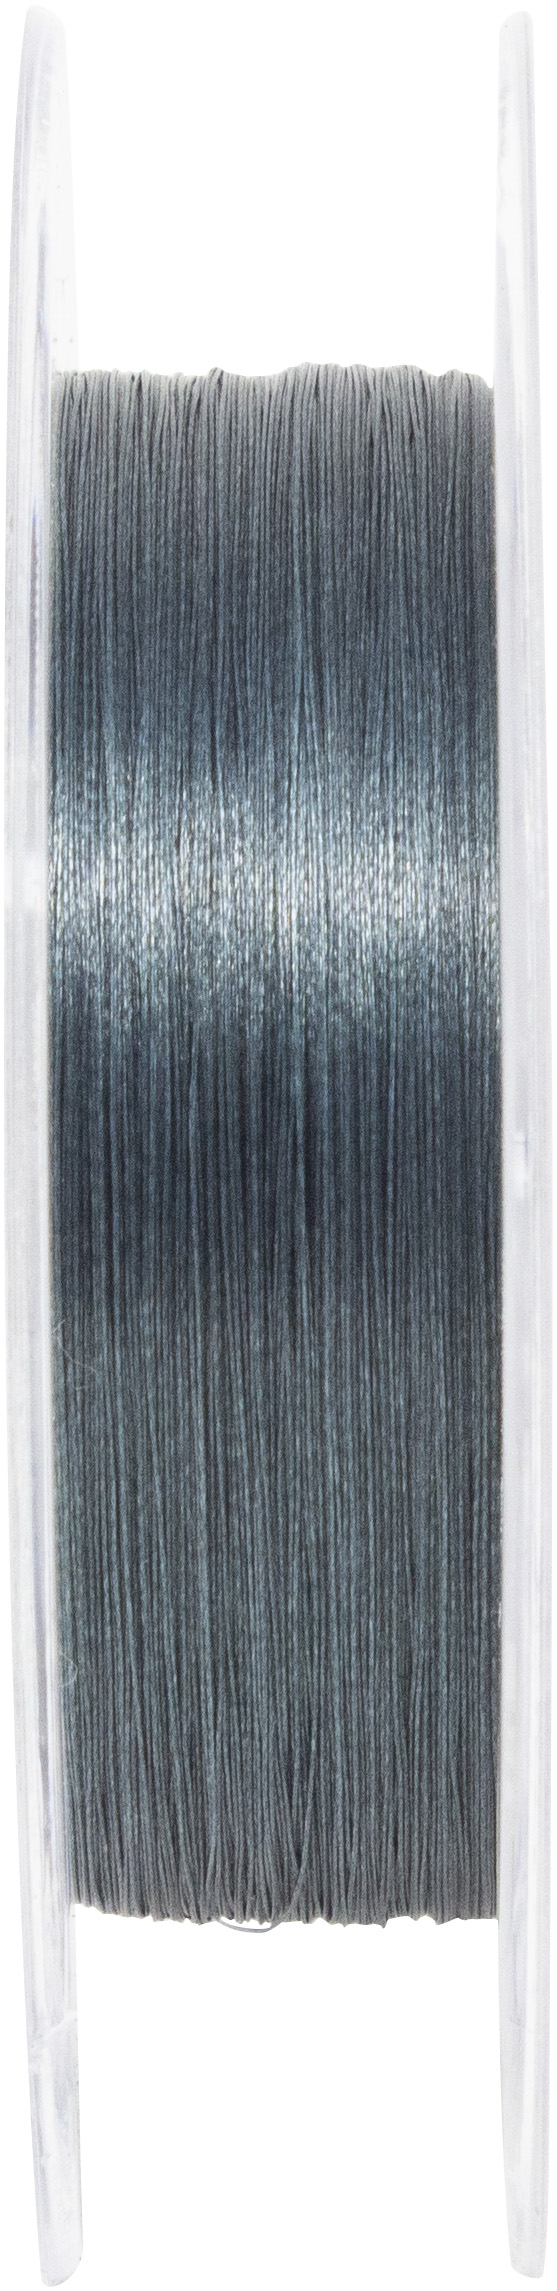 Seika V- Line Grey Braided Line